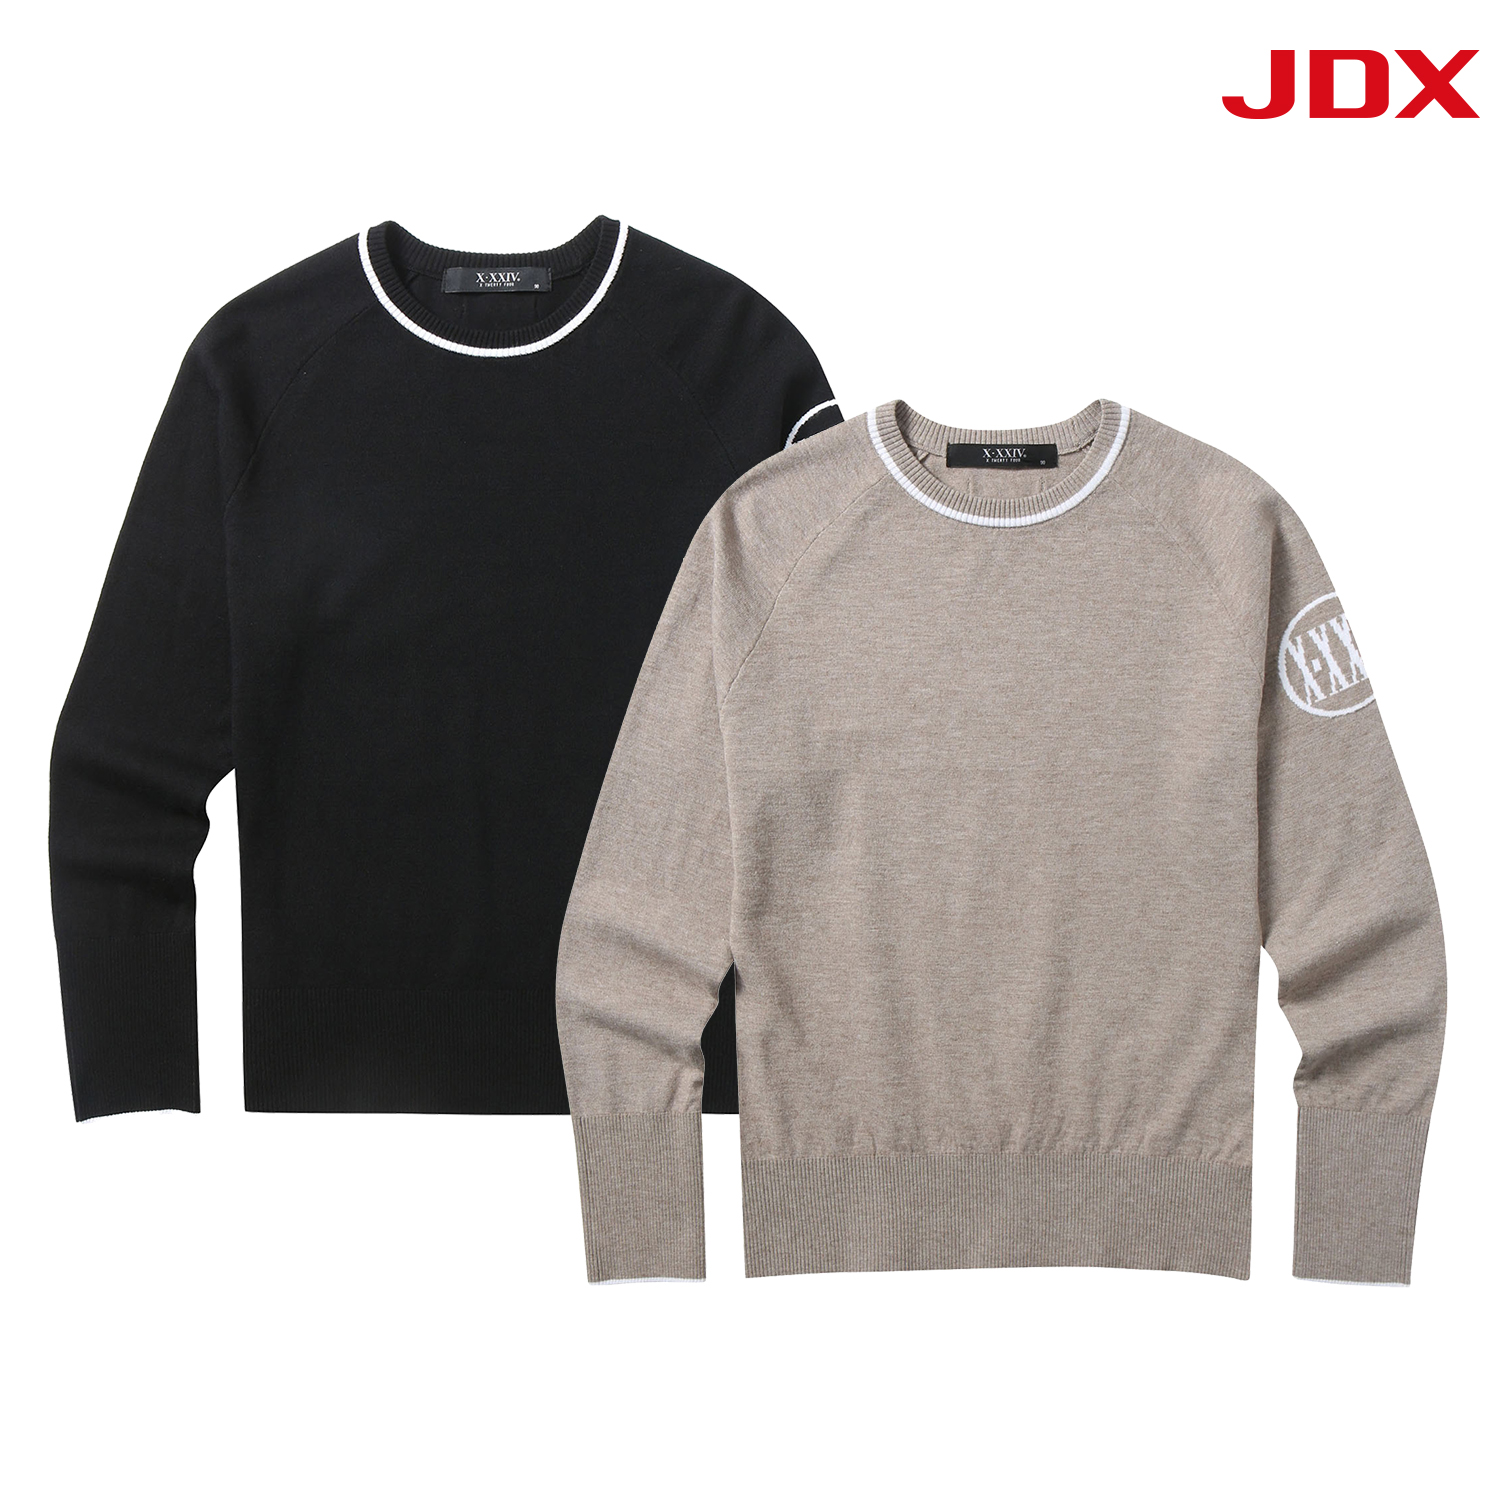 [핫딜] JDX 여성 소매 로고 포인트 라운드 스웨터 2종 택 1(X4SPT5351)